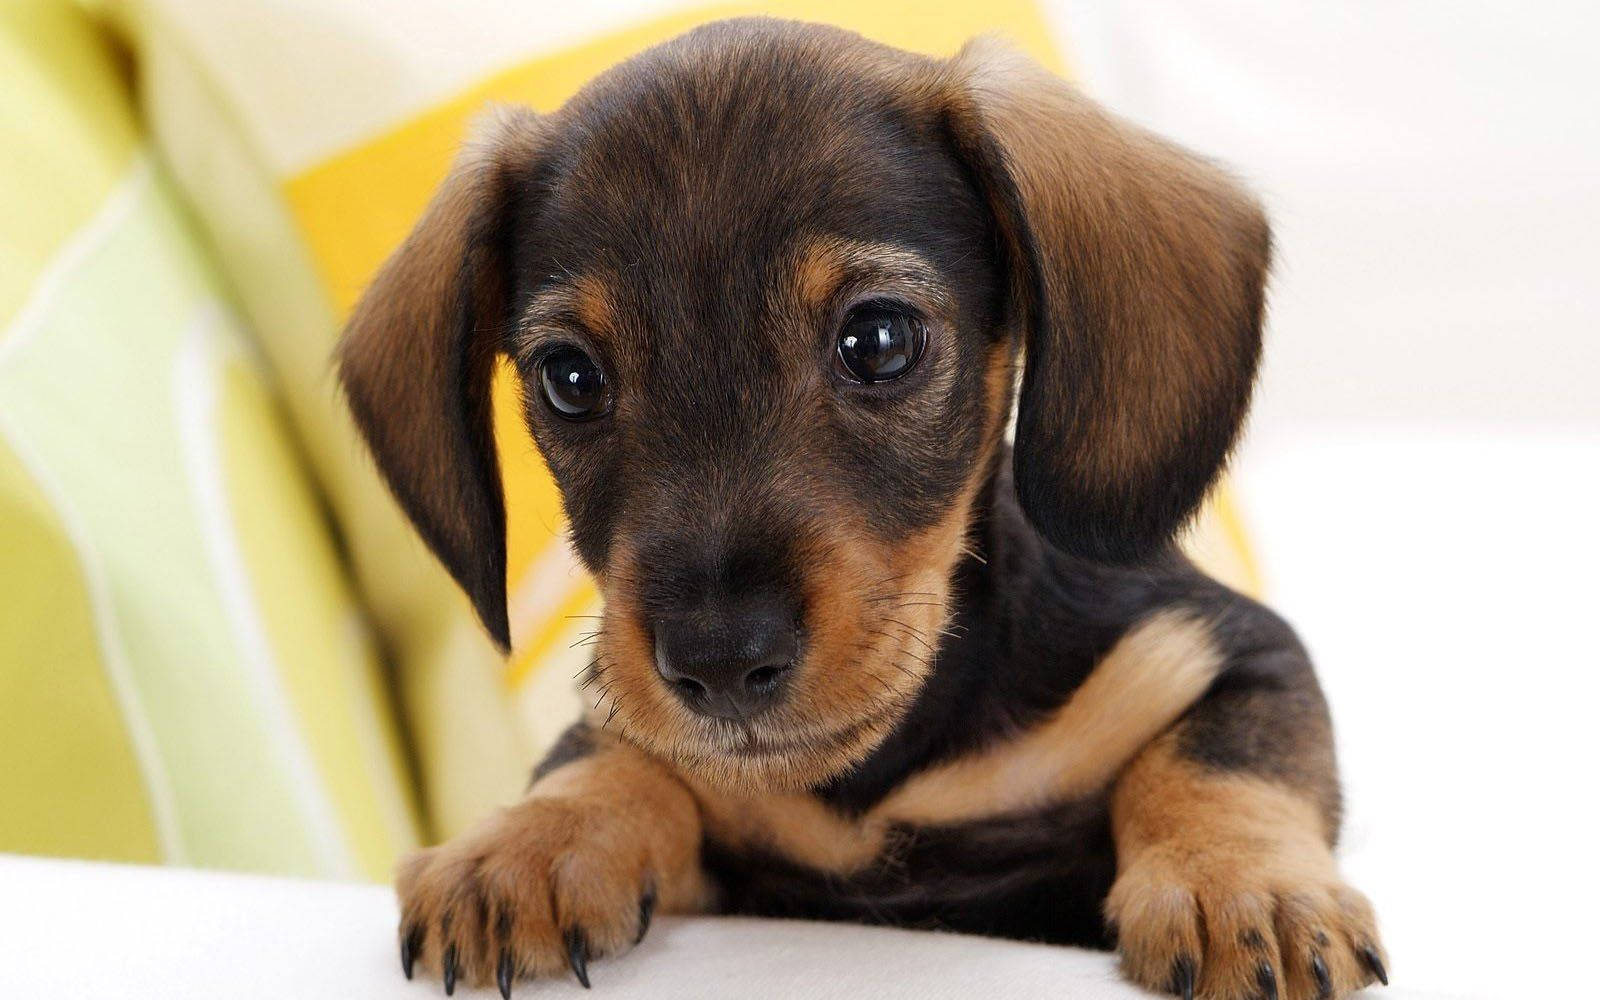 Cute Dog Dachshund On Sofa Background